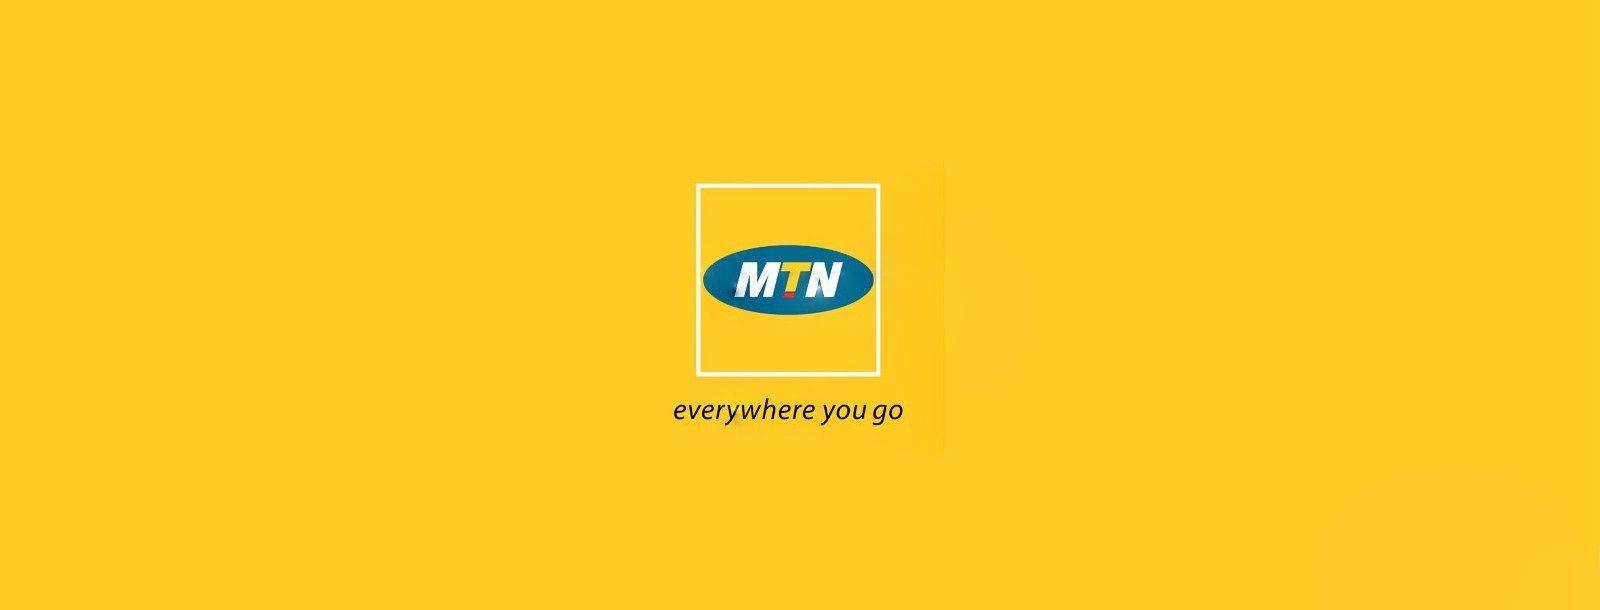 MTN Logo - MTN-LOGO.jpeg - The Nerve Africa - Development Site